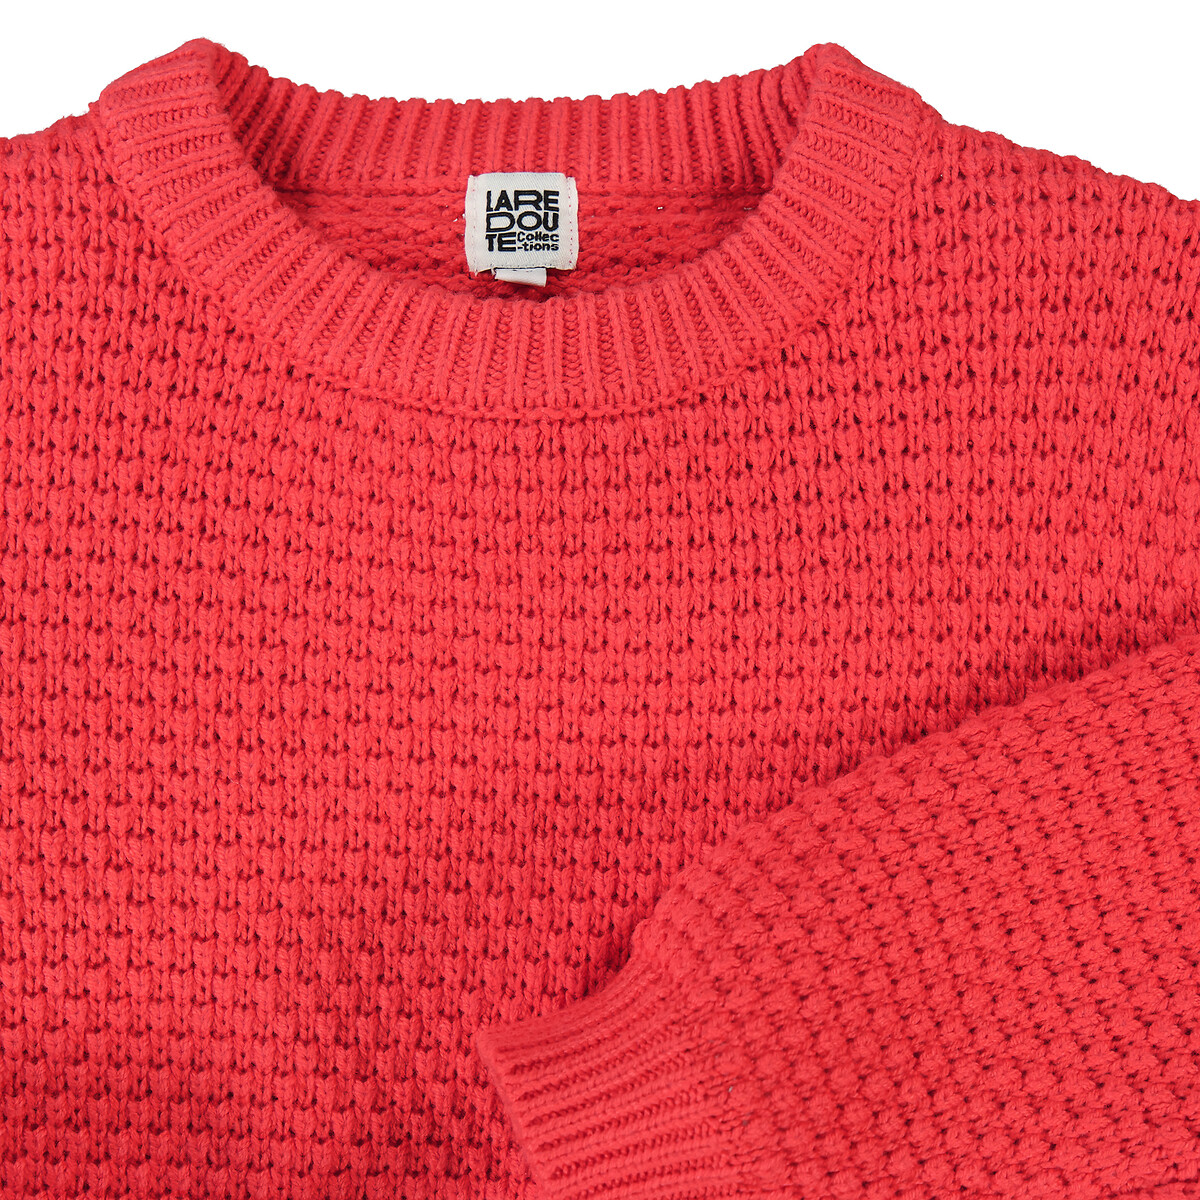 

Пуловер LaRedoute, Красный, Пуловер с круглым вырезом из оригинального объемного трикотажа 3 года - 94 см красный